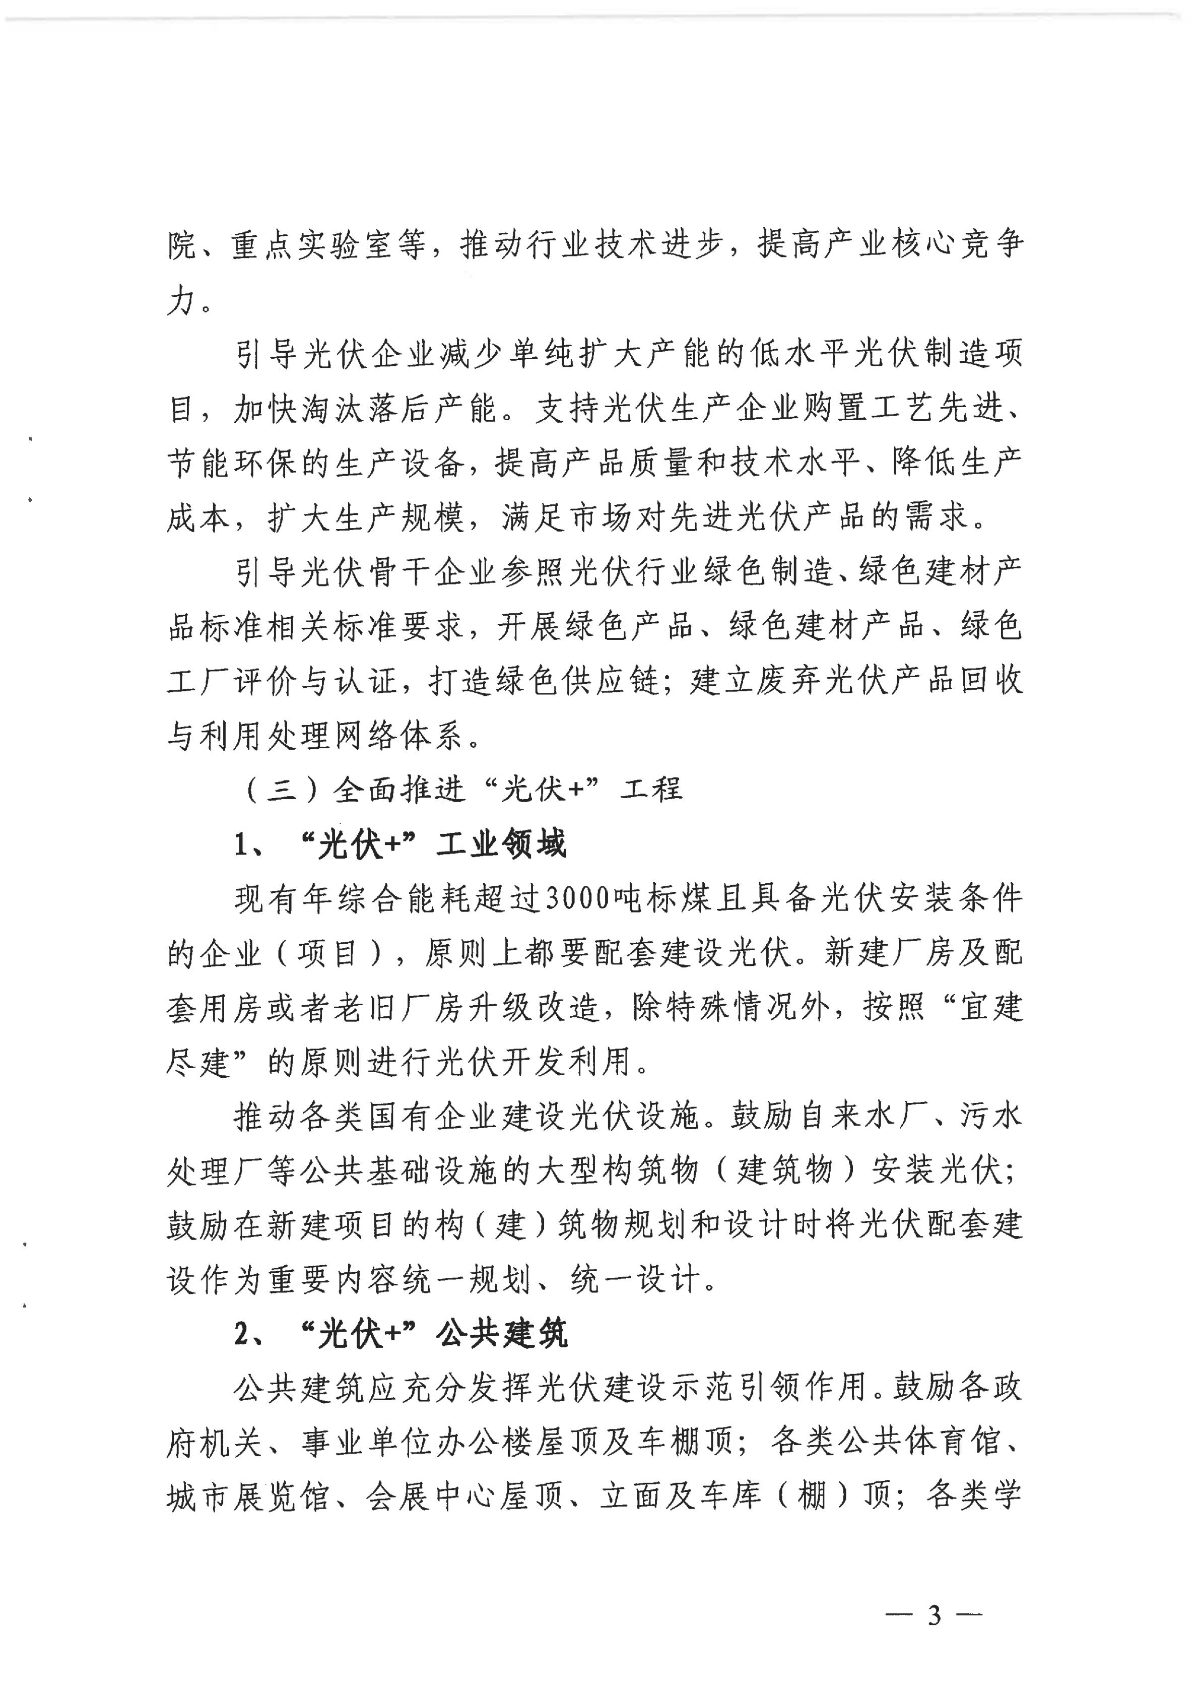 1128关于印发《关于进一步加快杭州市光伏发电项目建设的实施意见》的通知_02.jpg